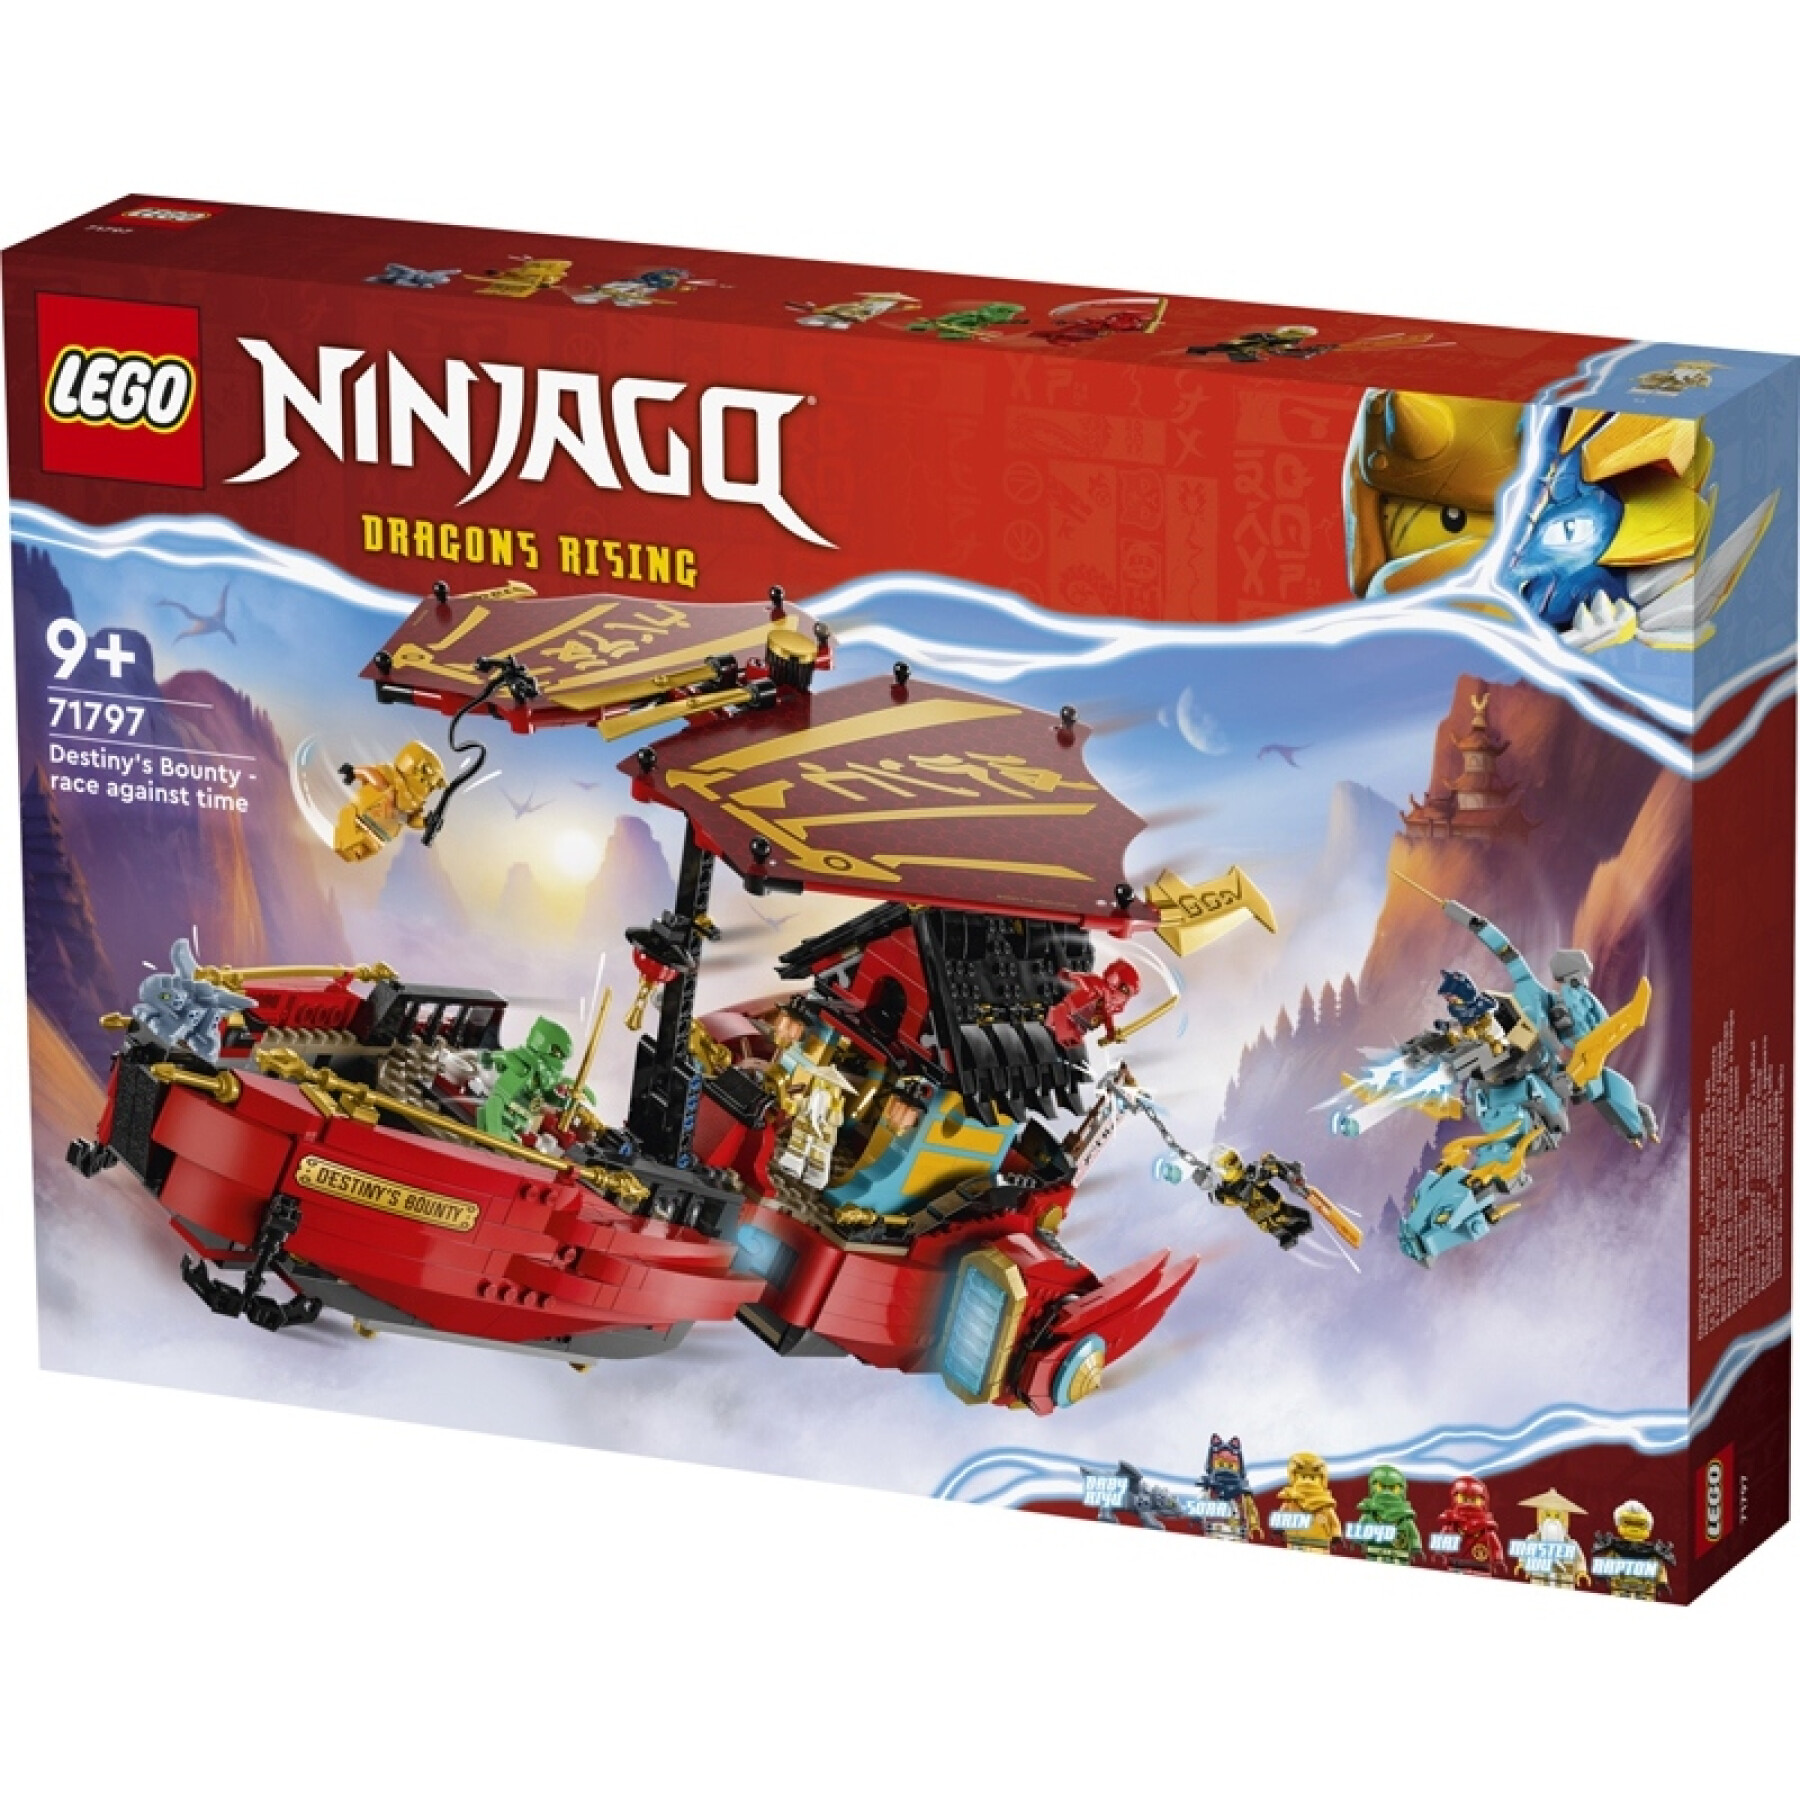 Construction games Lego Qg Des Ninjas Ninjago